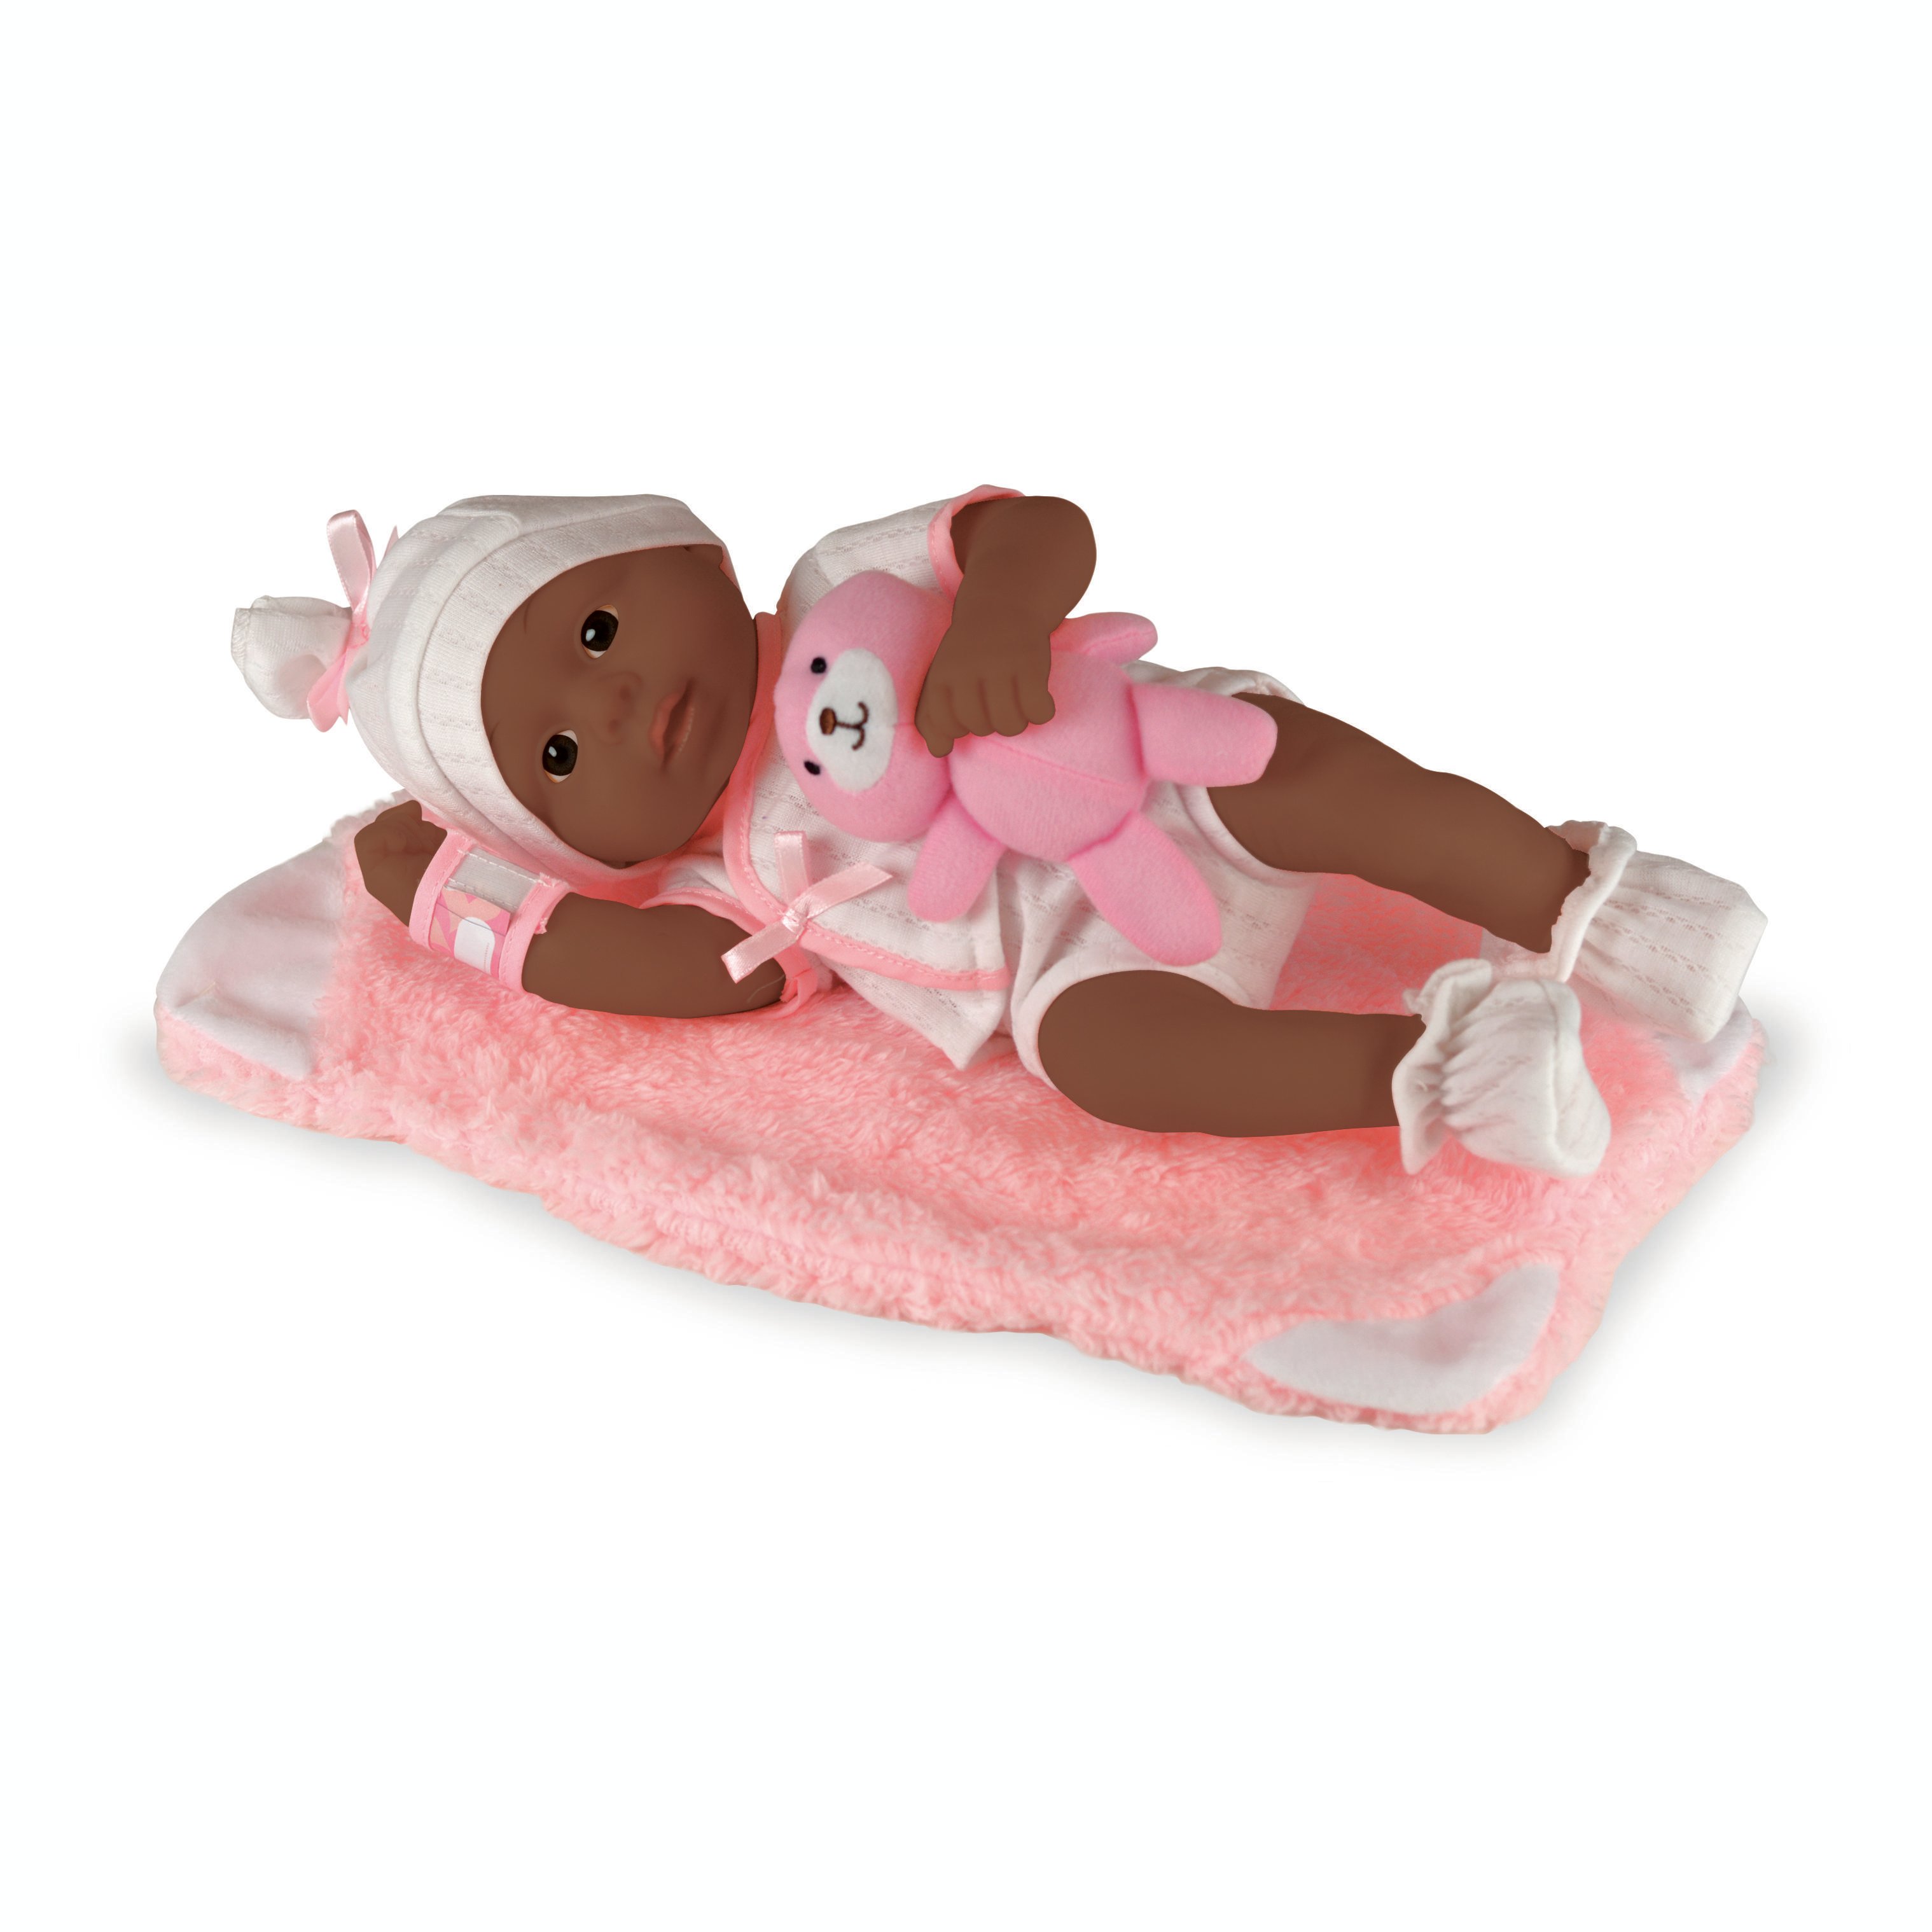 Happy Friend - Newborn Ethnic Baby Girl Doll 30cm (504219)